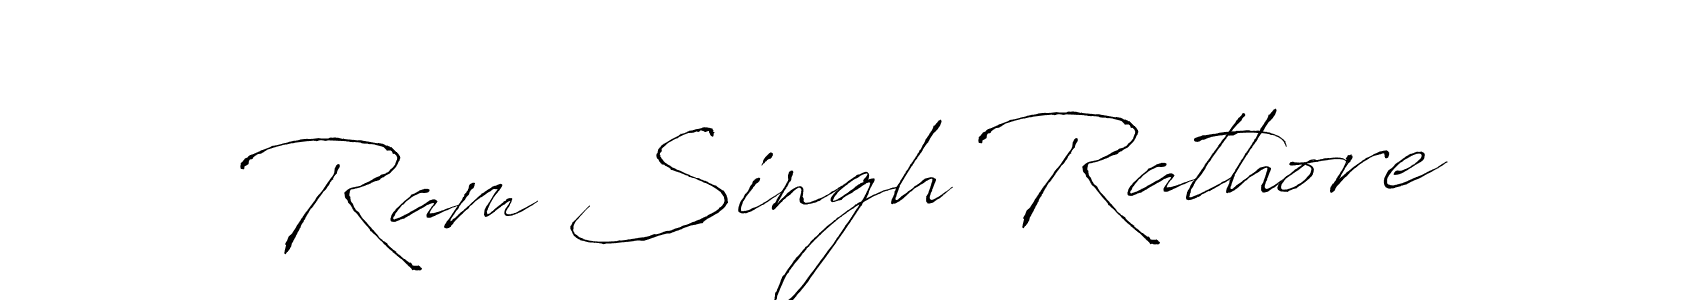 94+ Ram Singh Rathore Name Signature Style Ideas | Cool eSignature